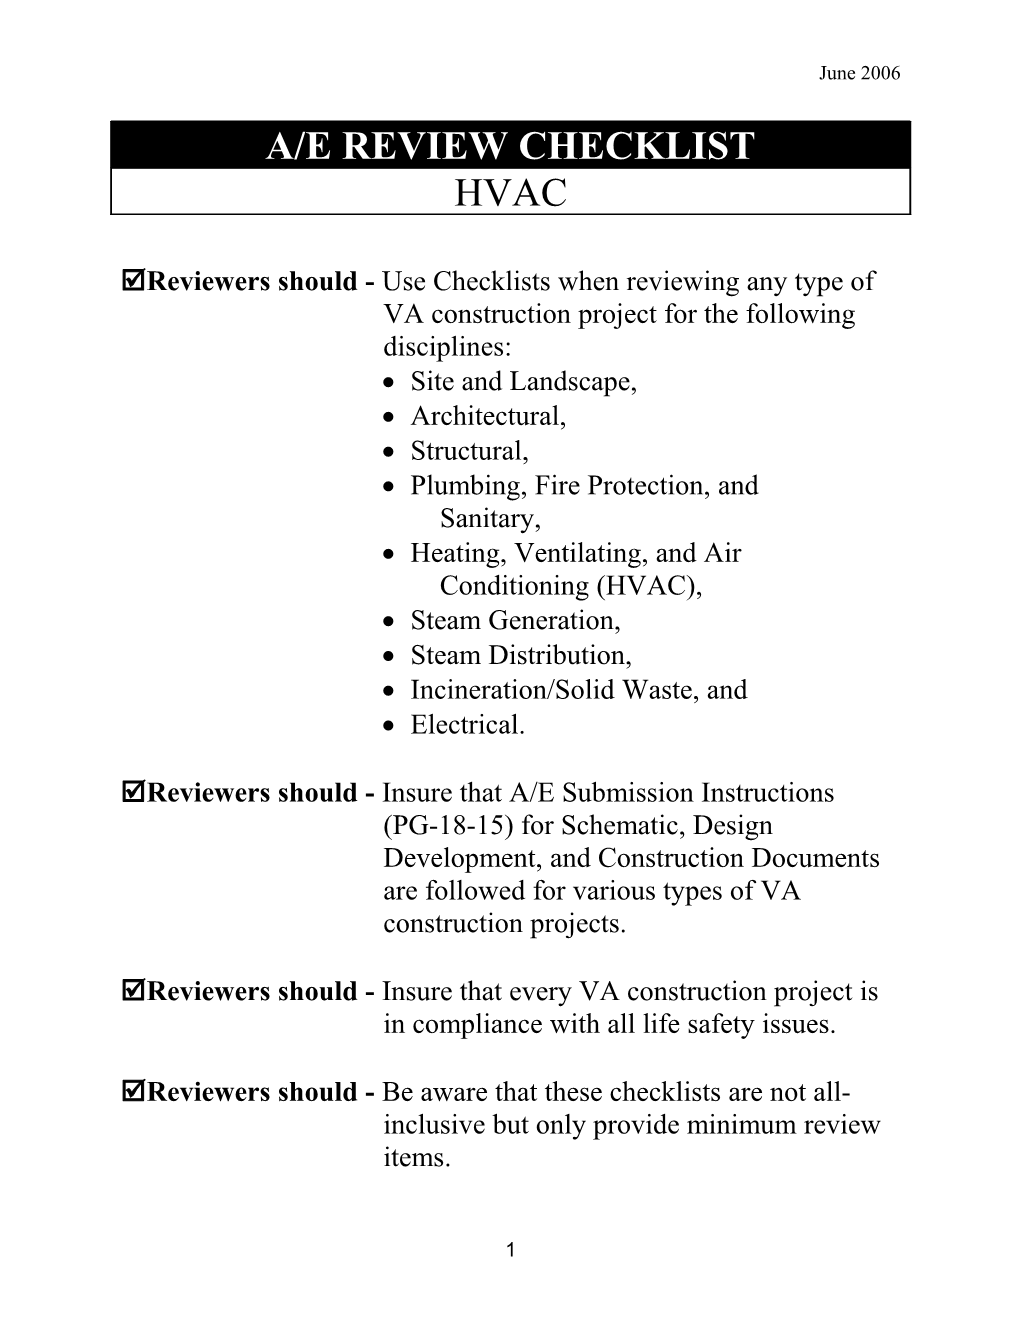 A/E Review Checklist - HVAC